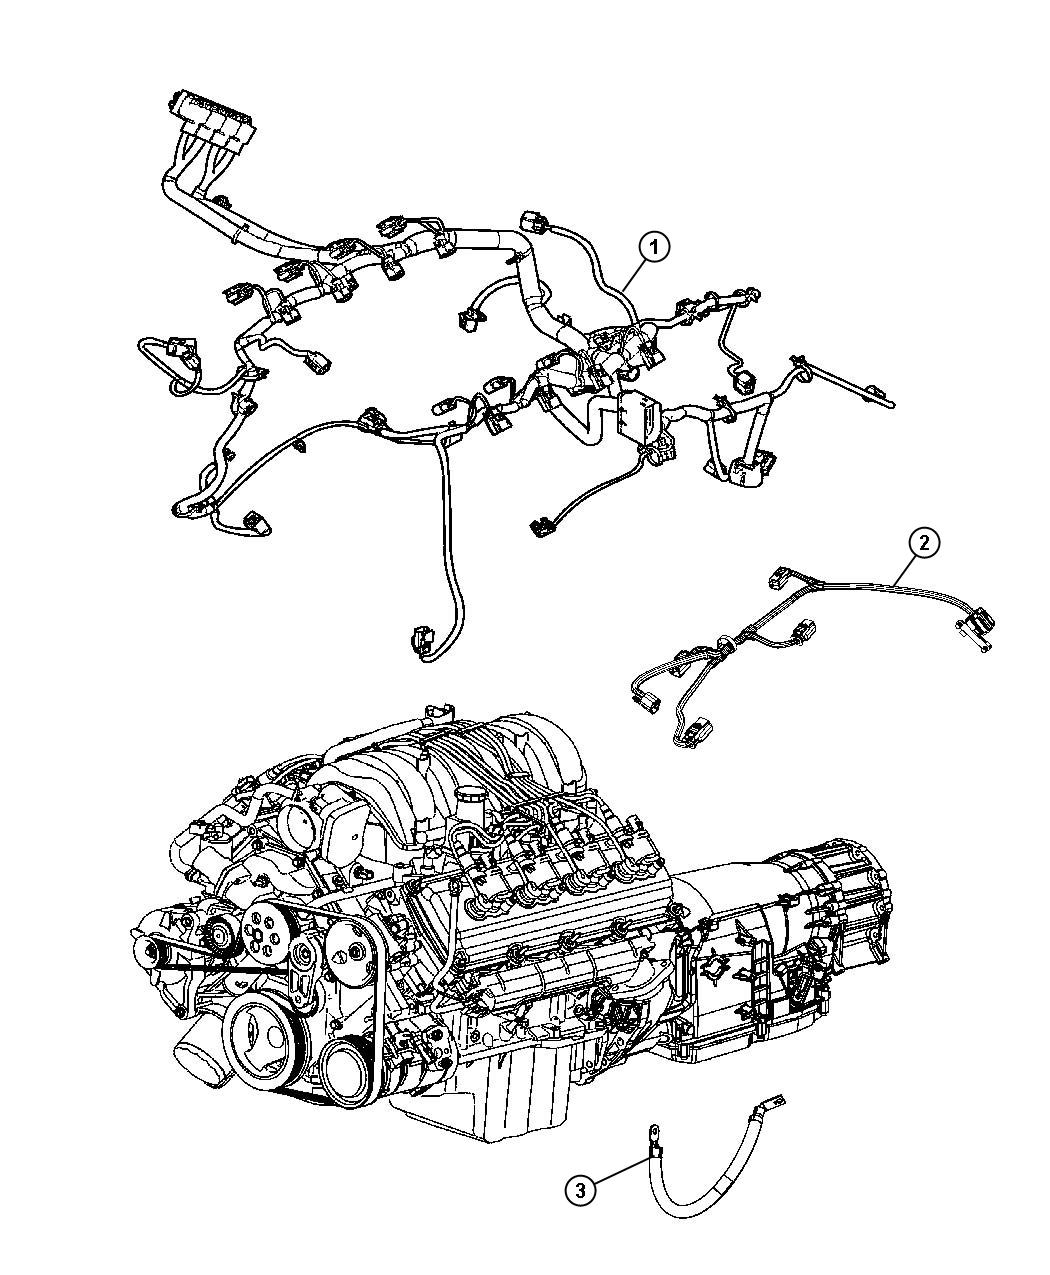 2006 jeep grand cherokee 3.7l repair manual free pdf download